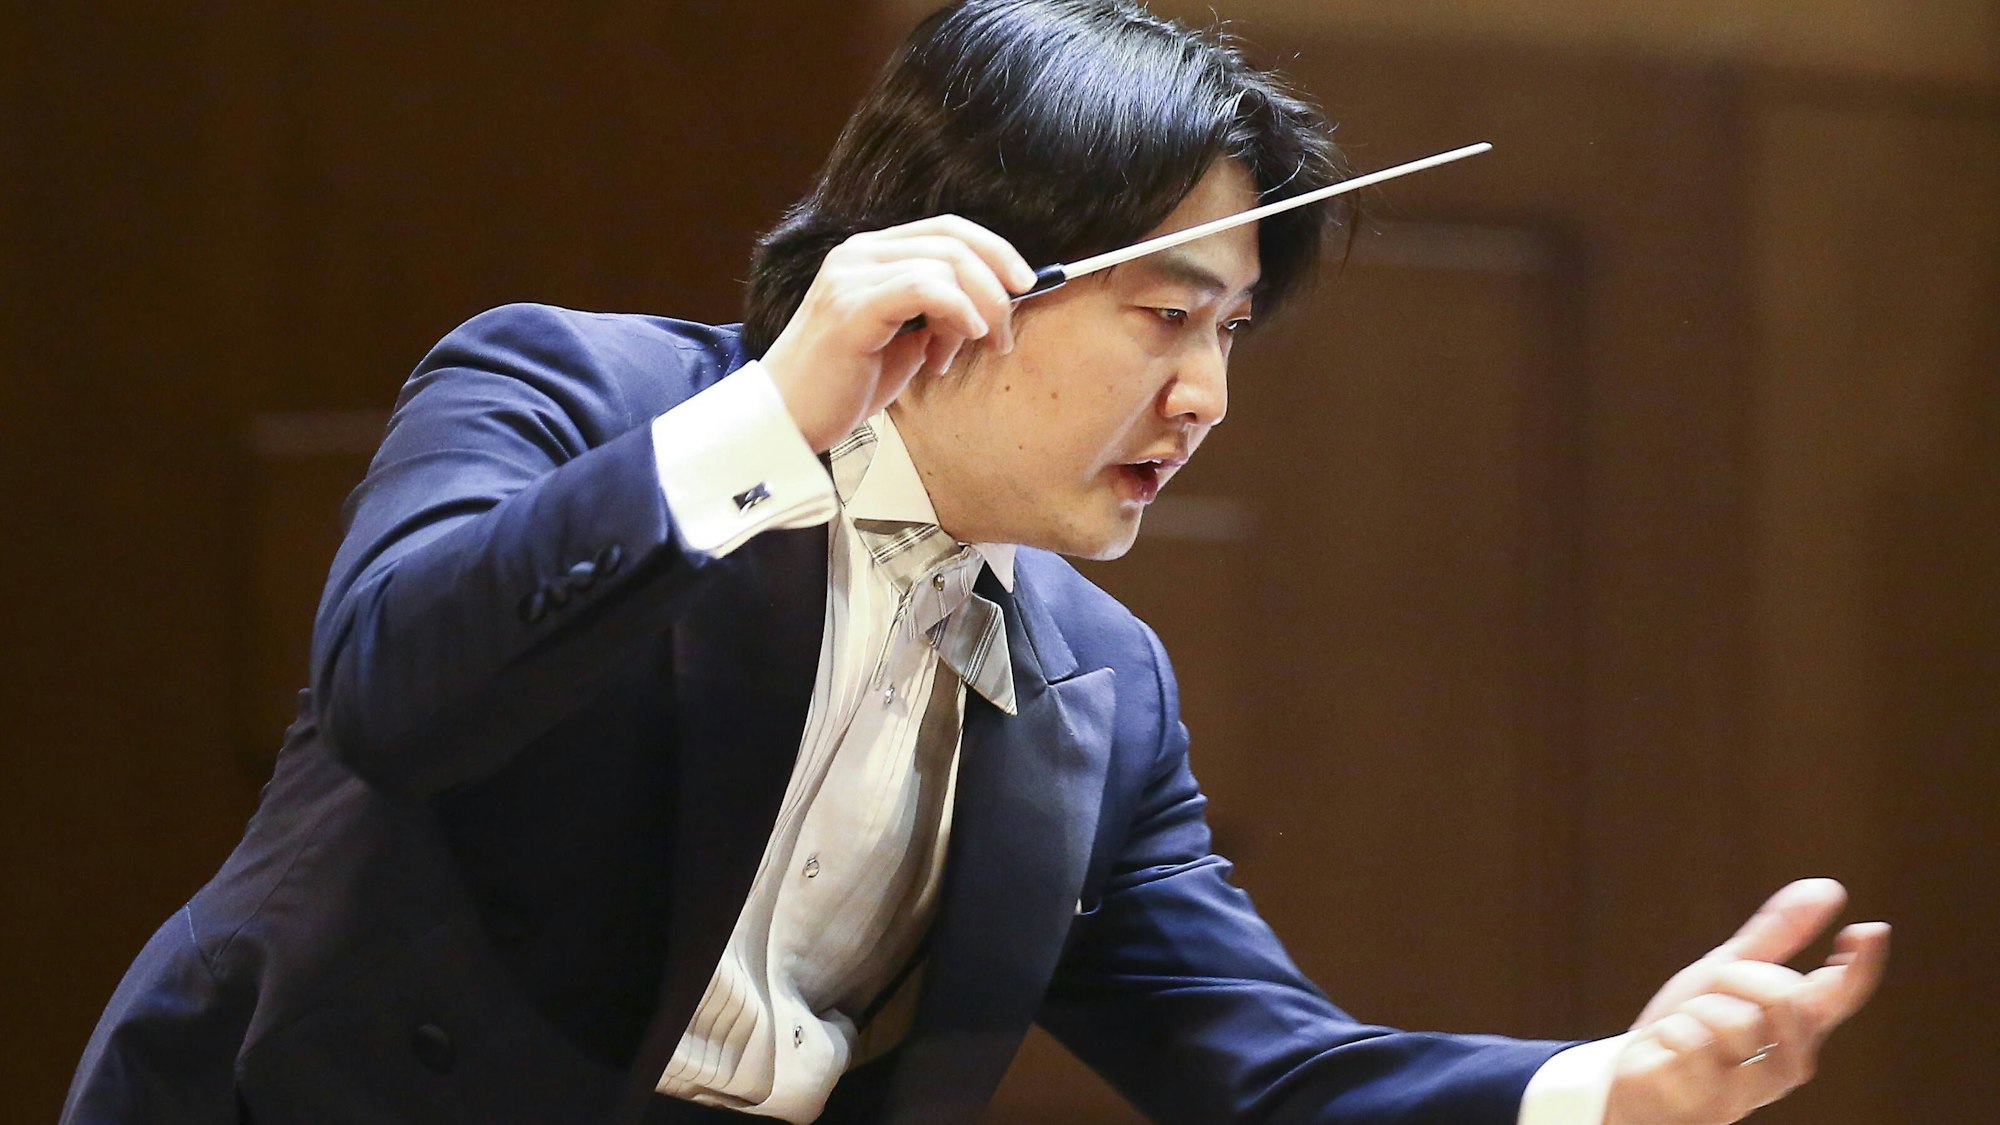 Auf dem Bild ist der Dirigent zu sehen. Er trägt einen blauen Anzug und ein weißes Hemd. Er hält in der rechten Hand seinen Taktstock und gestikuliert auch mit der Linken.